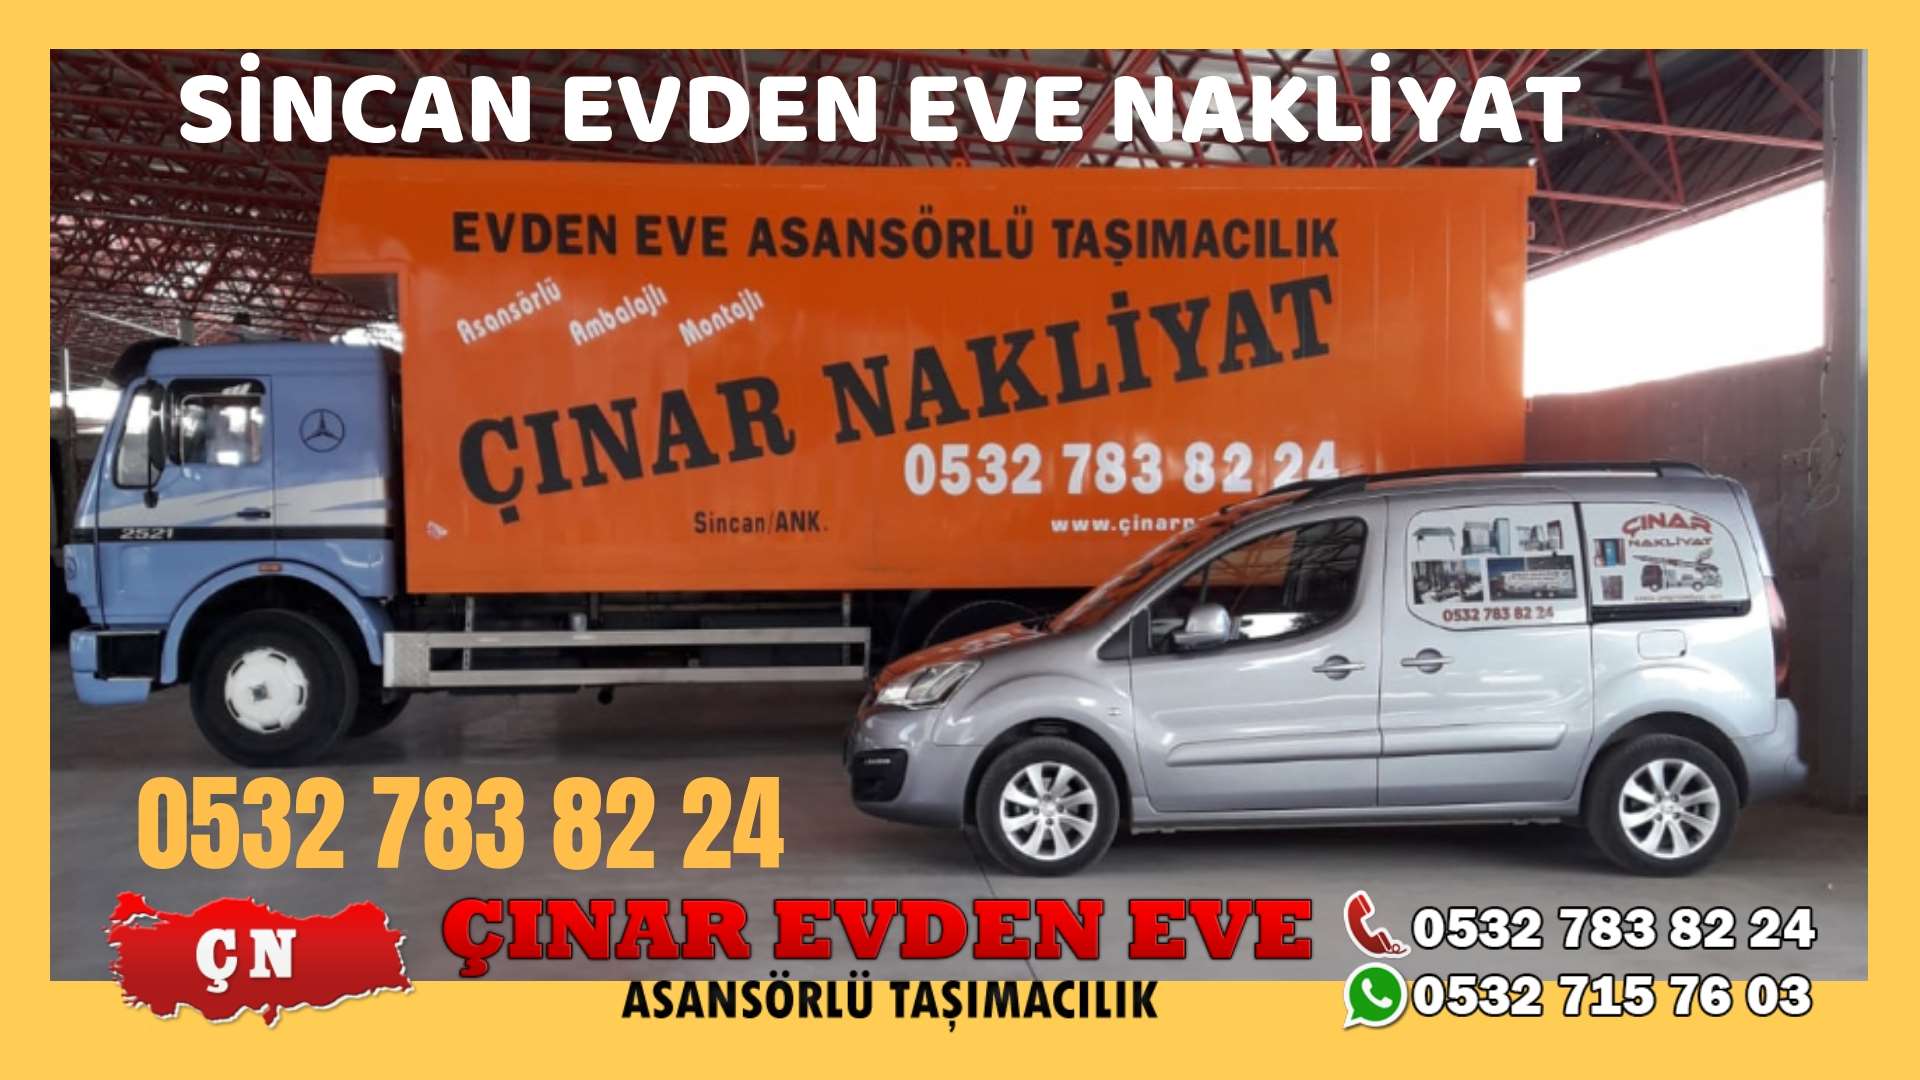 Ankara Saraycık Evden eve ev taşıma sincan nakliye fiyatları 0532 715 76 03